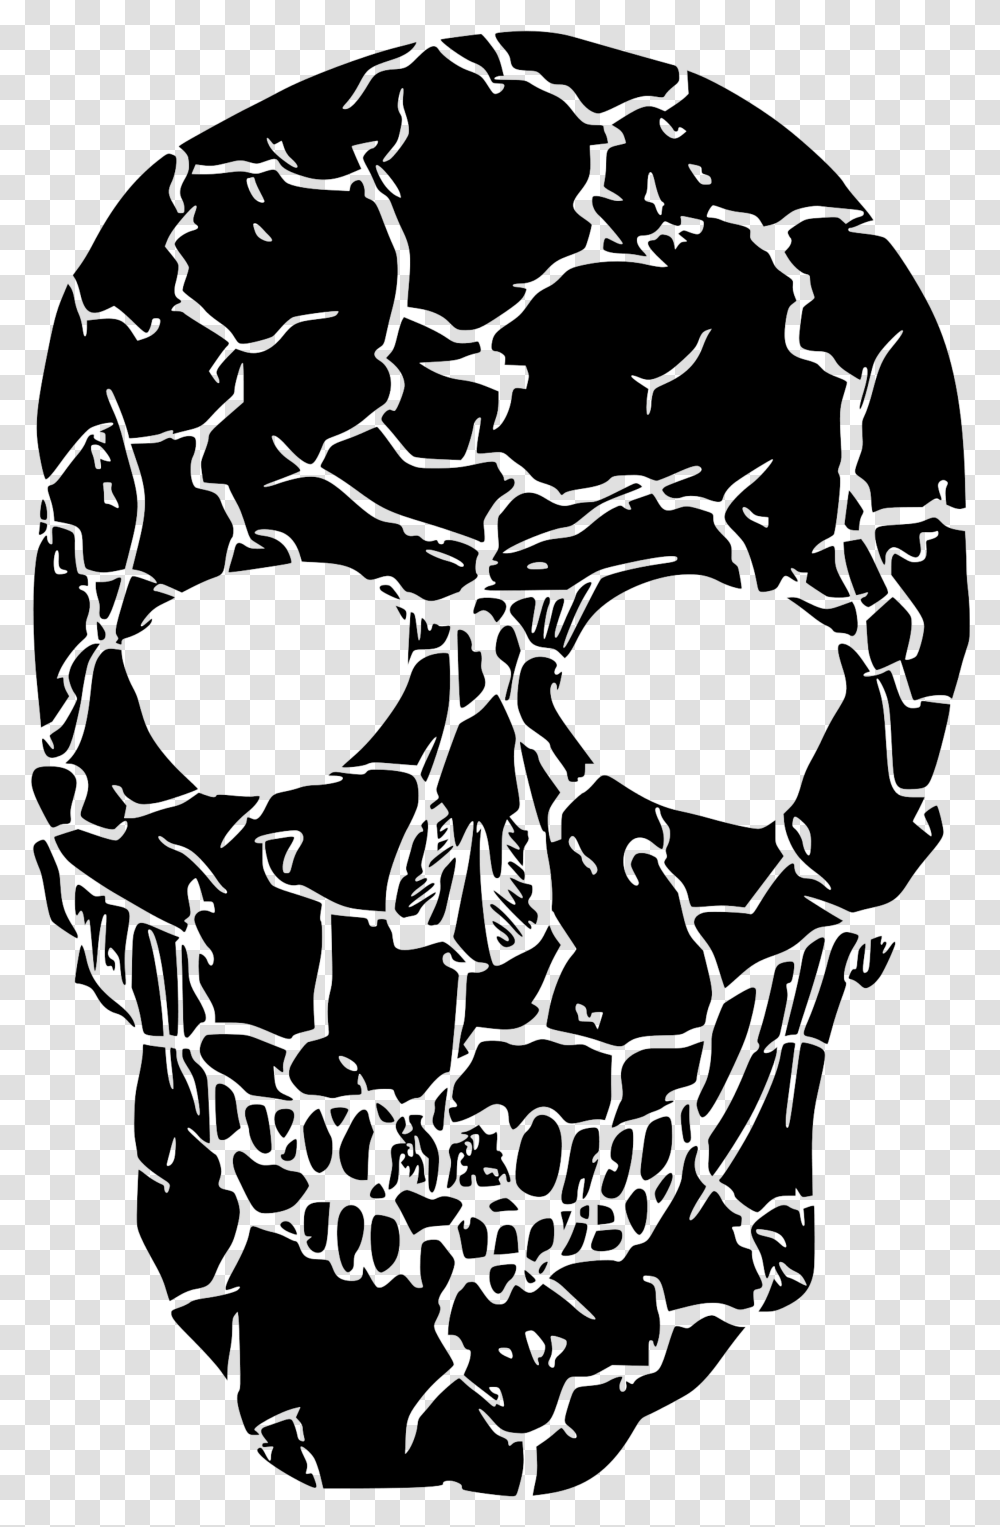 Broken Skull Broken Skull, Spider Web, Rug, Stencil Transparent Png